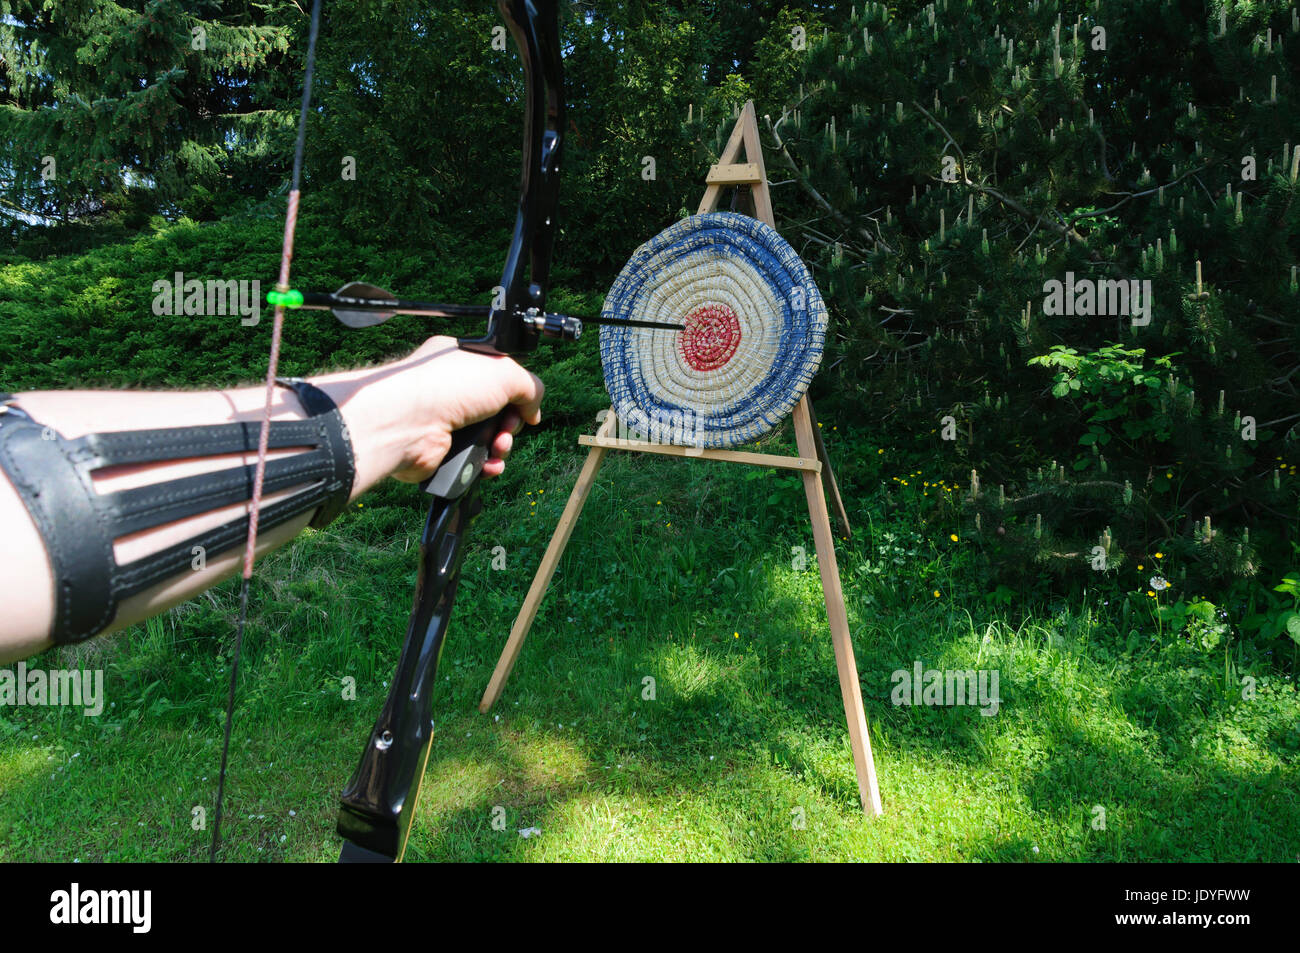 Mit Pfeil Und Bogen Auf Eine Zielscheibe Schiessen Stockfotografie - Alamy